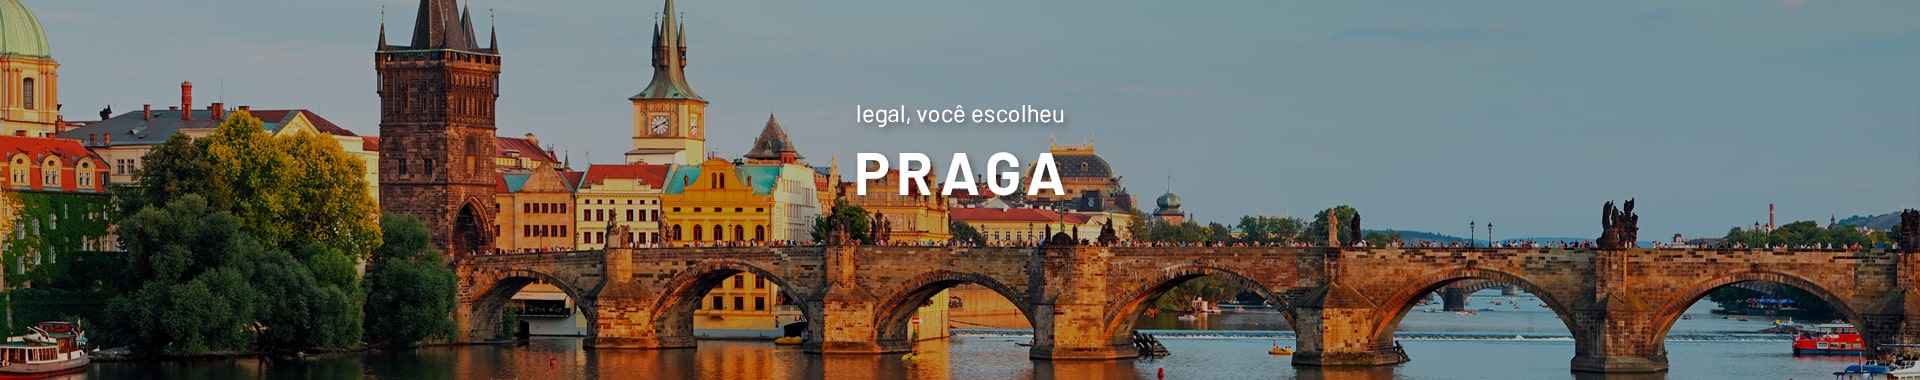 Banner Praga